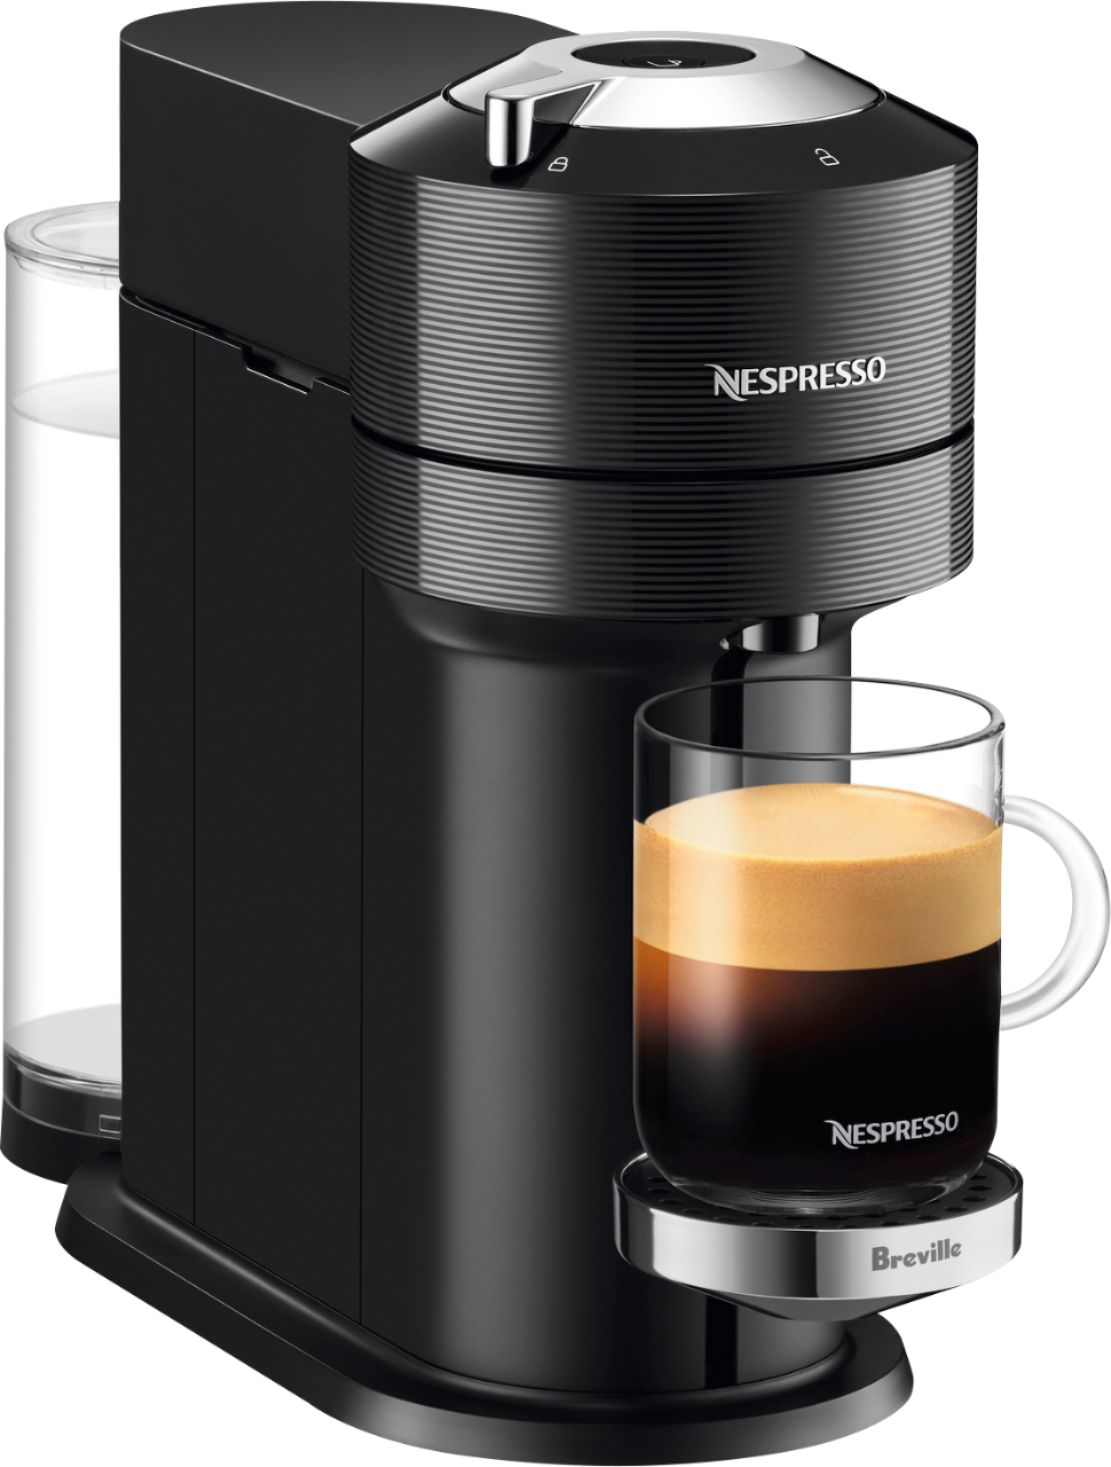 Nespresso Breville Vertuo Next Premium Coffee Maker and Espresso ...